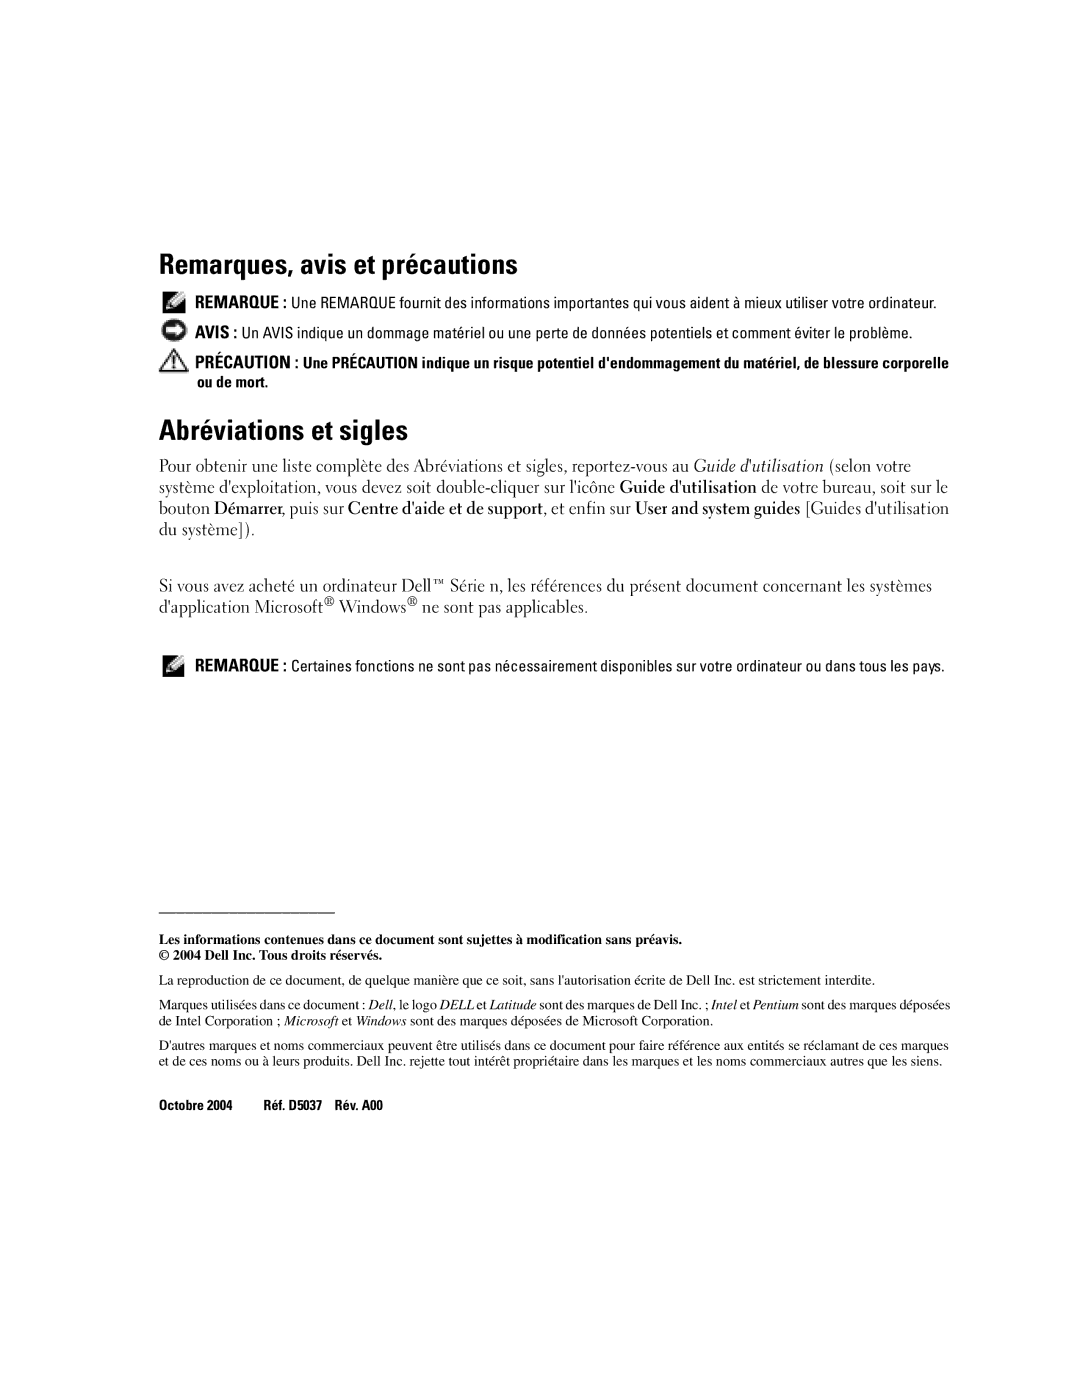 Dell D610 manual Remarques, avis et précautions, Abréviations et sigles 